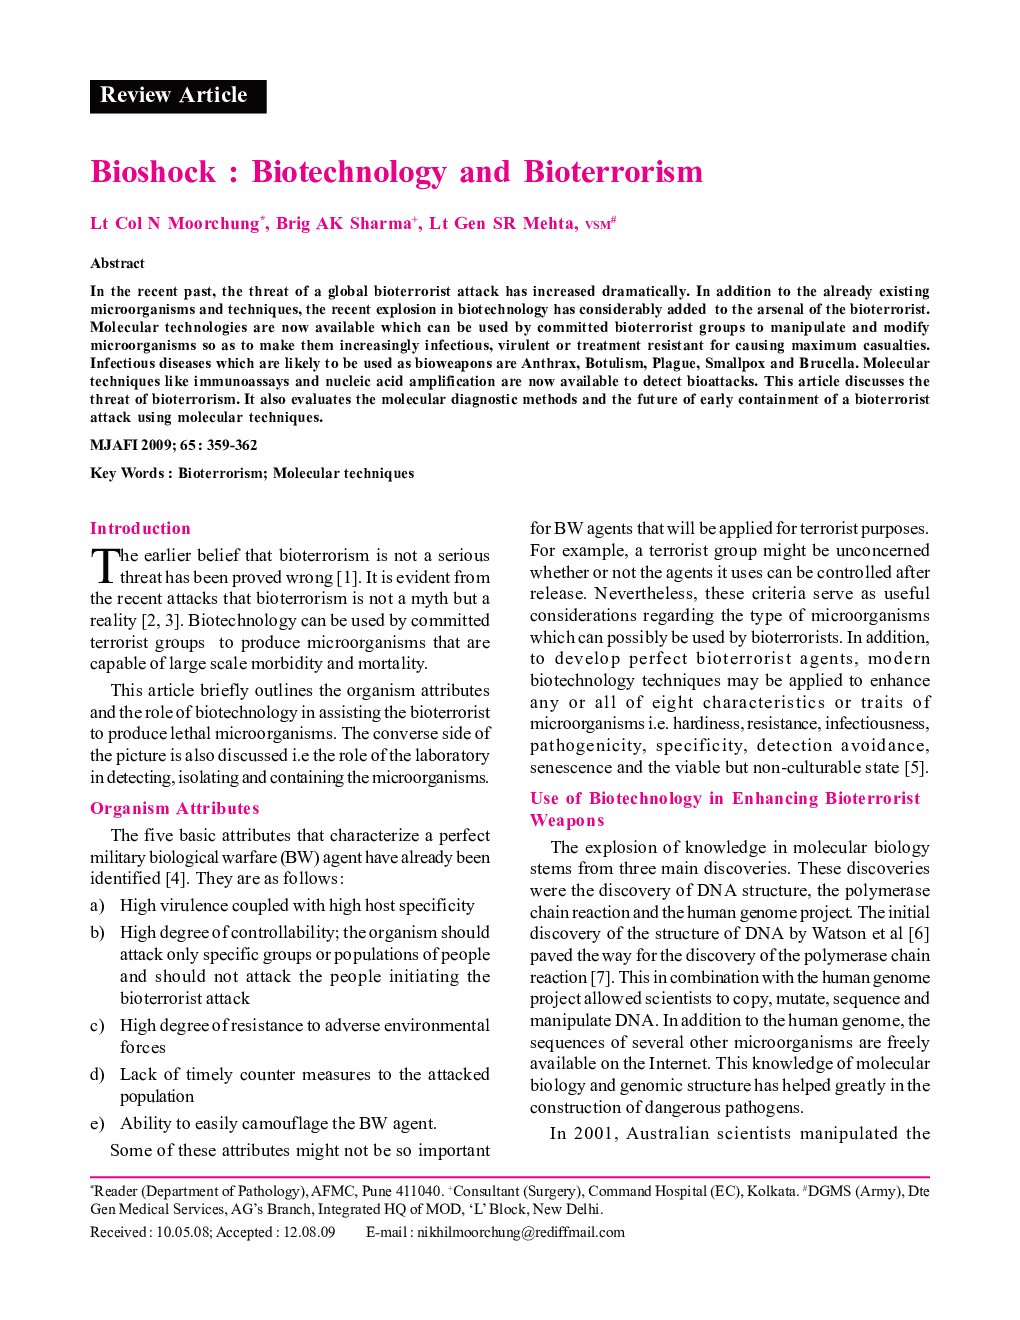 Bioshock: Biotechnology and Bioterrorism